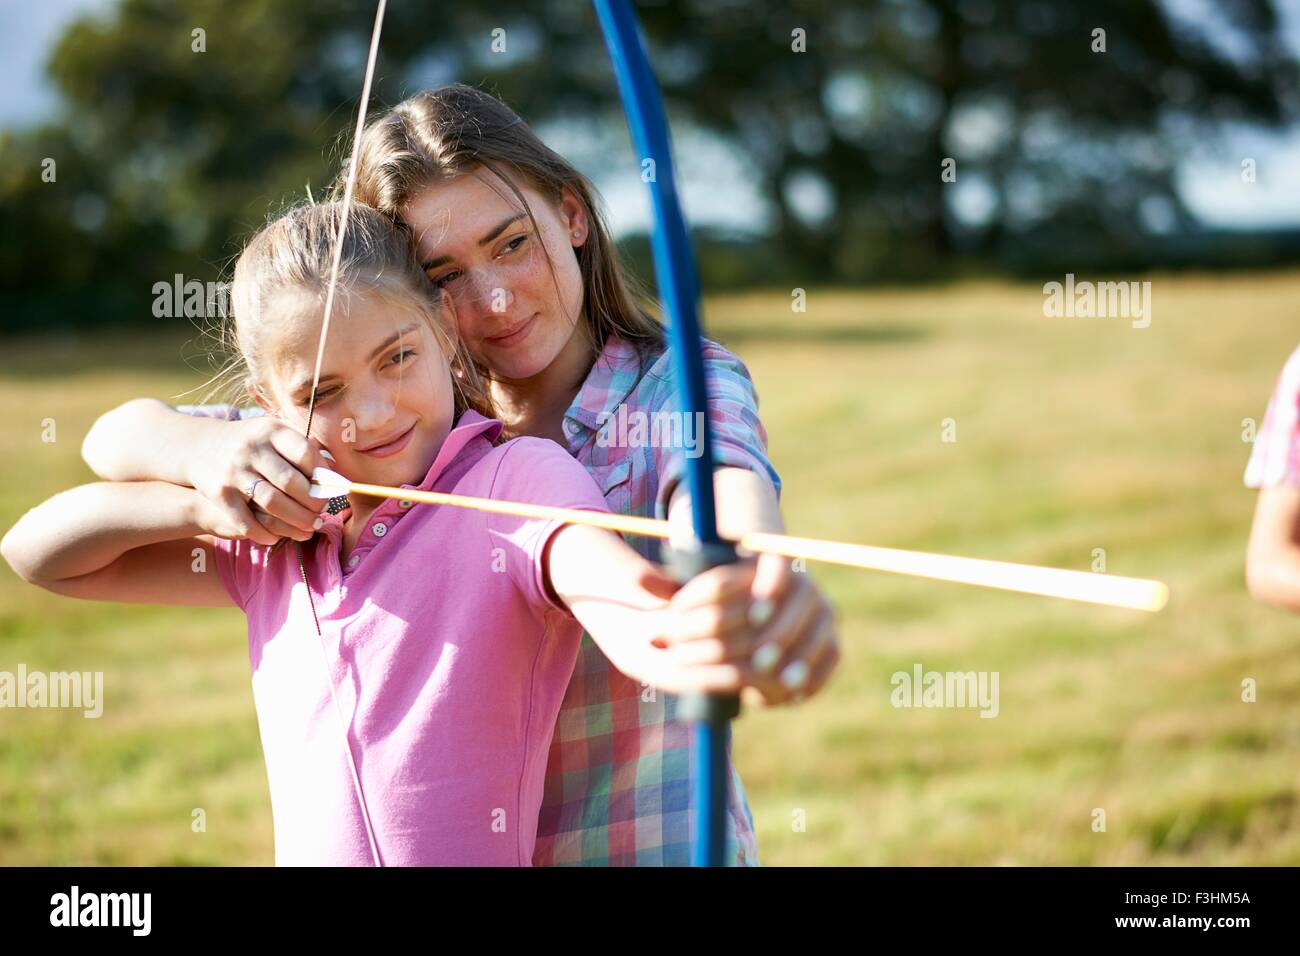 Chica aprender arquería de hermana adolescente Foto de stock